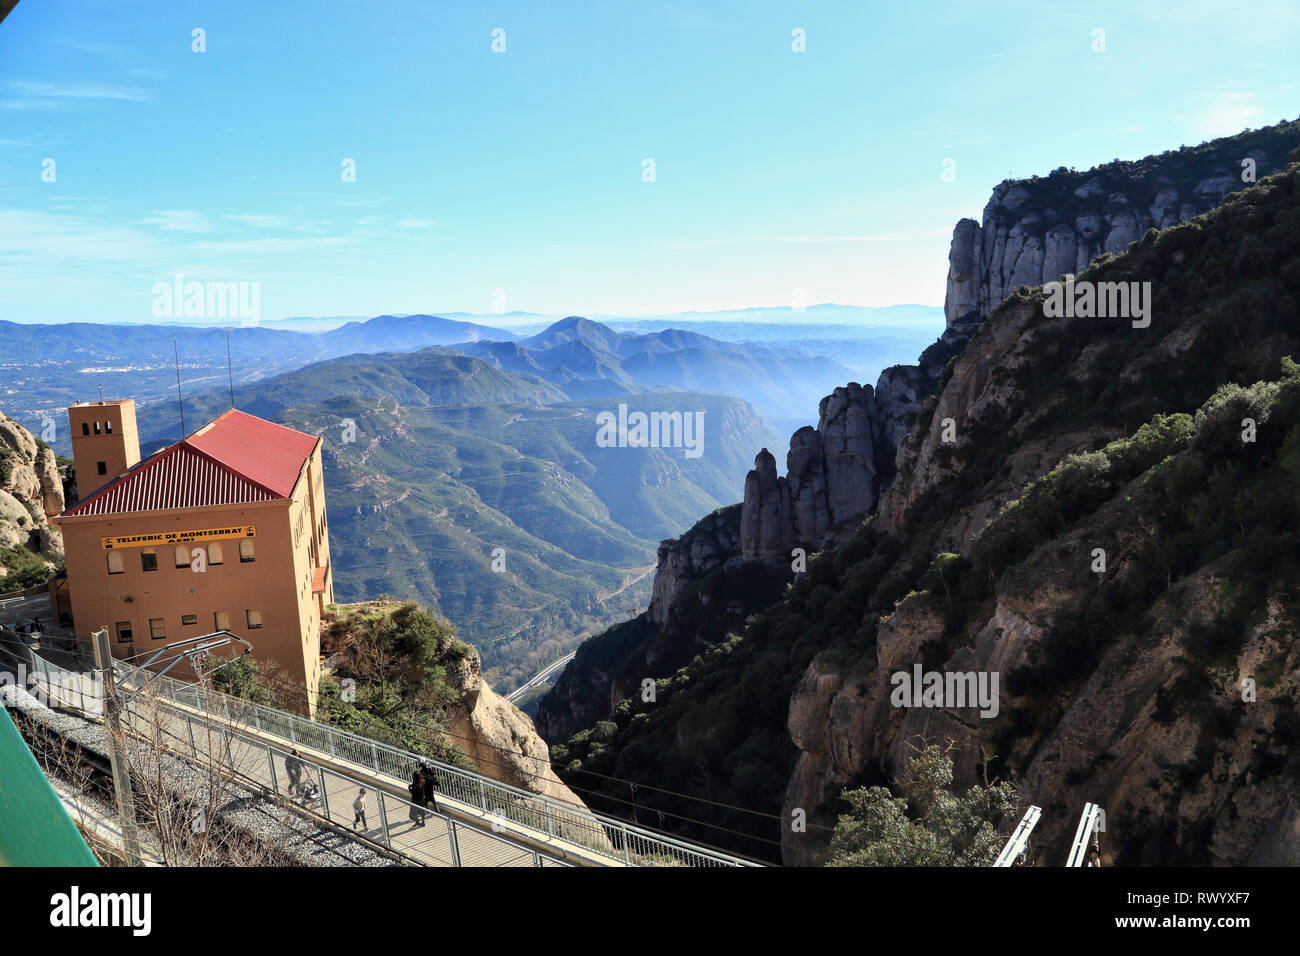 Aeri de Berg Montserrat, Katalonien, Spanien Stockfoto